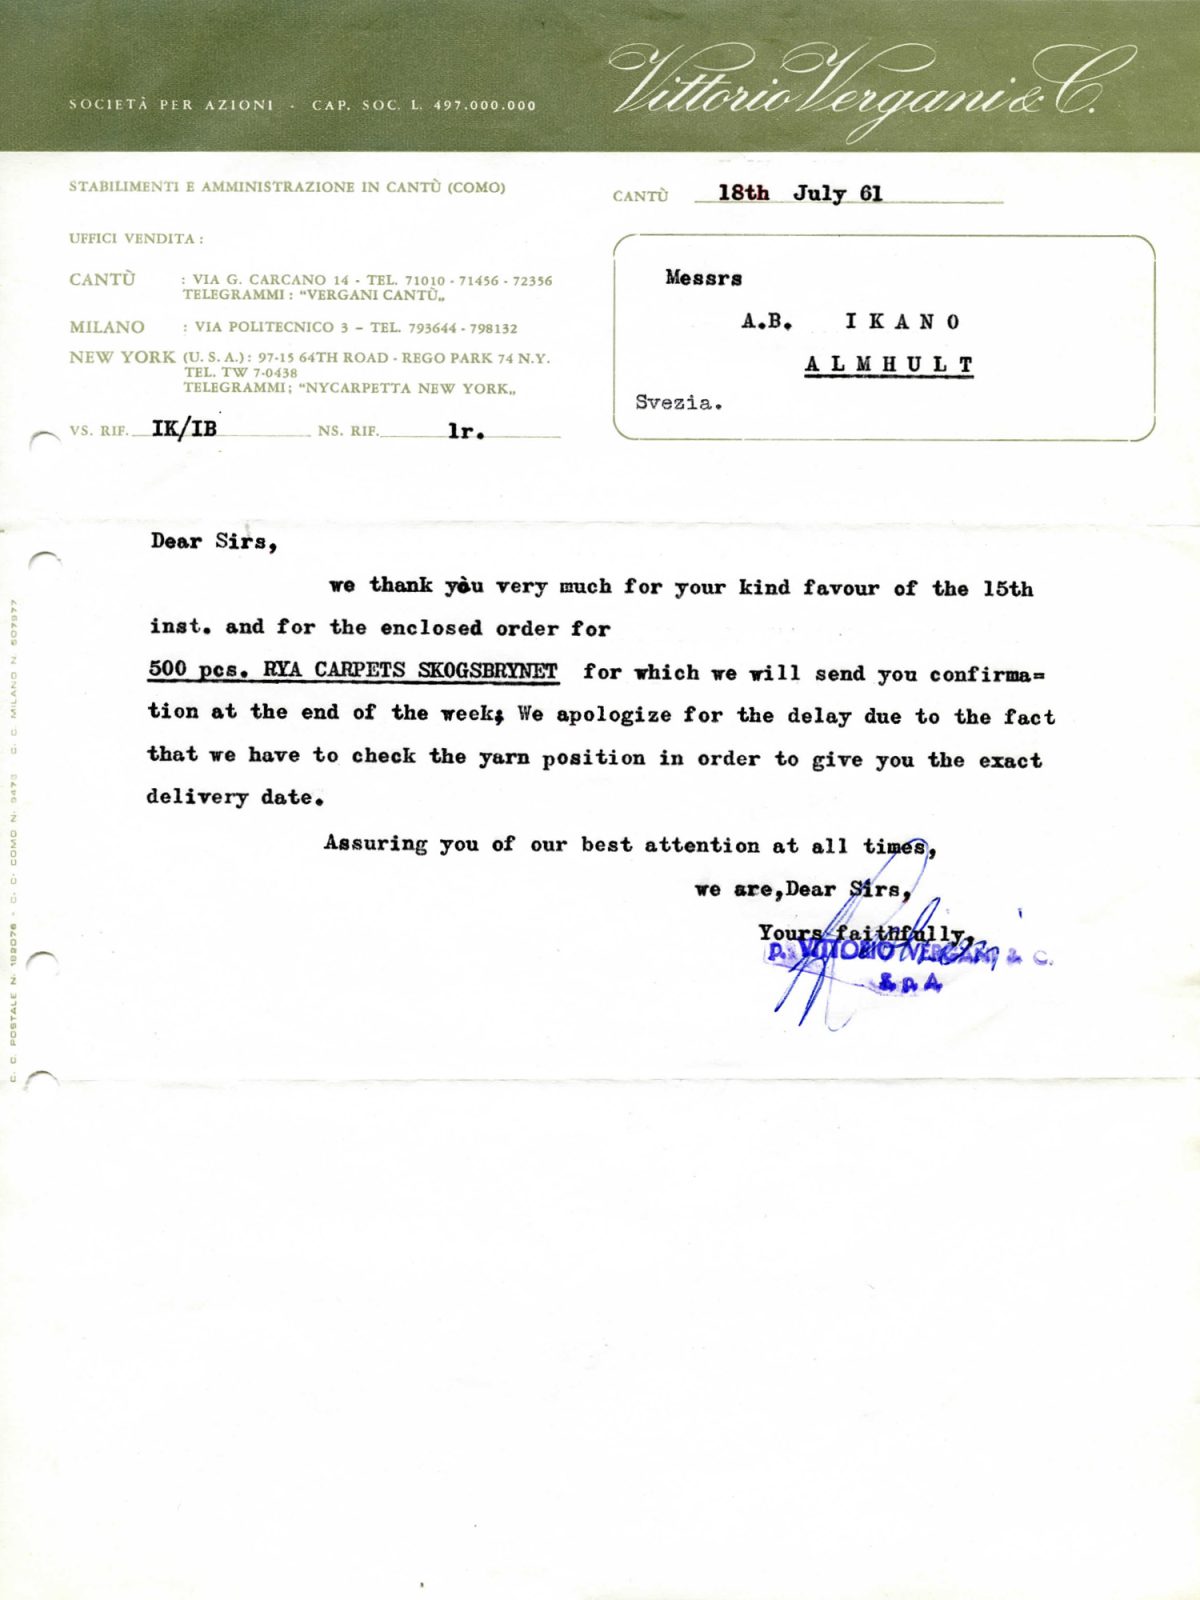 Faksimil av maskinskrivet brev från Vittorio Vergani & Co, Italien, till Ingvar Kamprad, IKEA, Sverige, daterat 18 juli 1961.